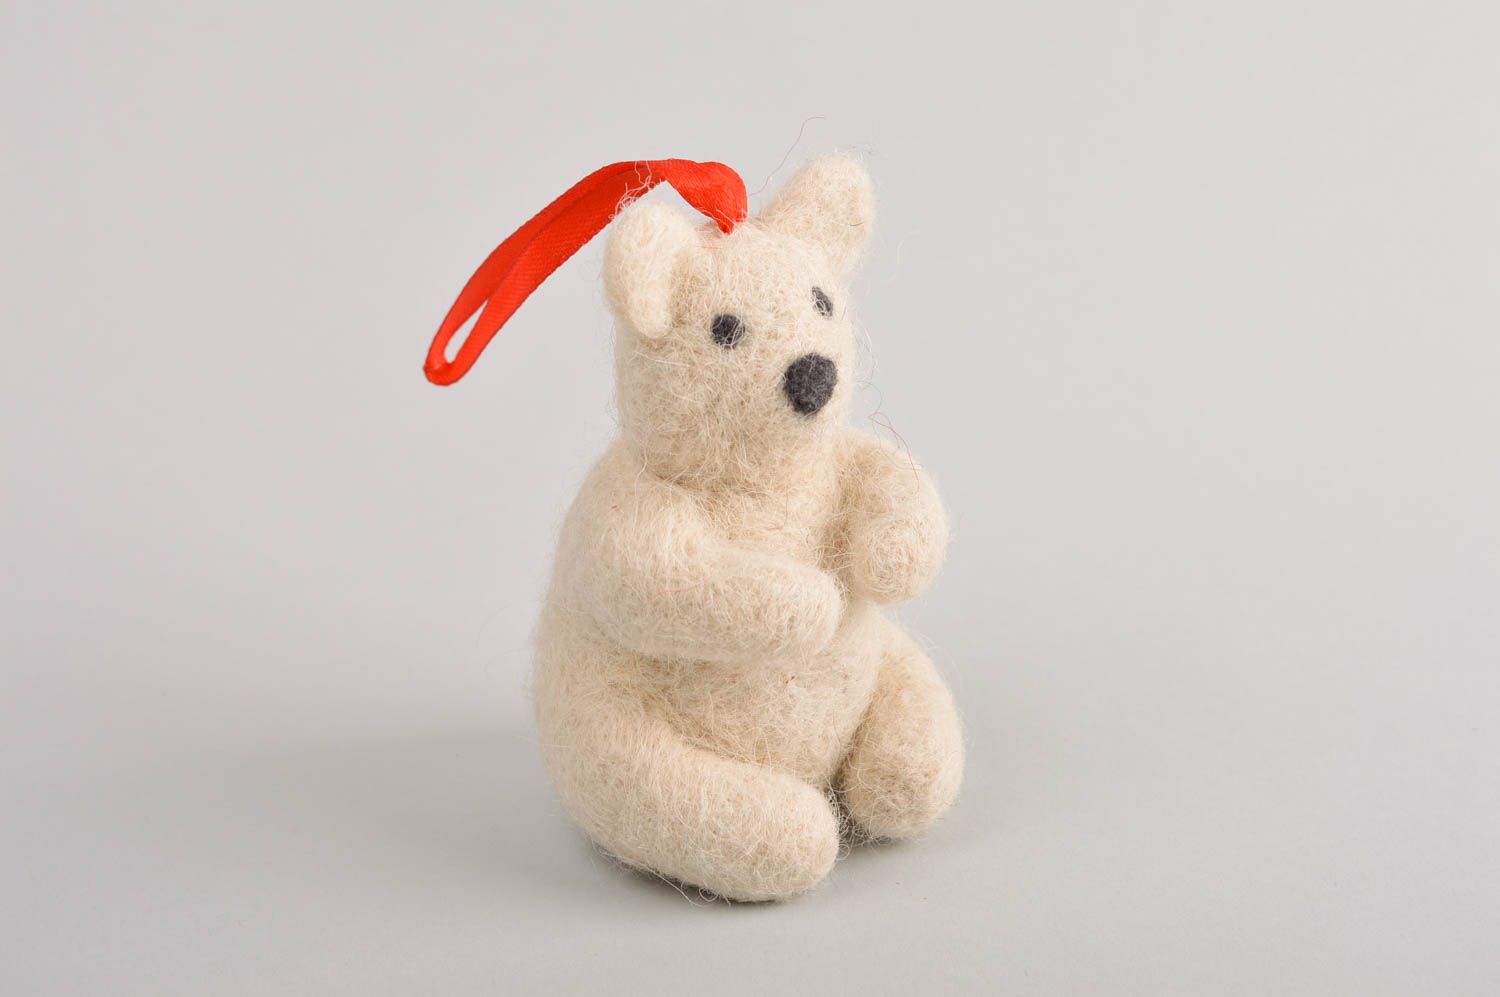 Handmade toy gift ideas designer toy for children woolen toy for nursery decor photo 2